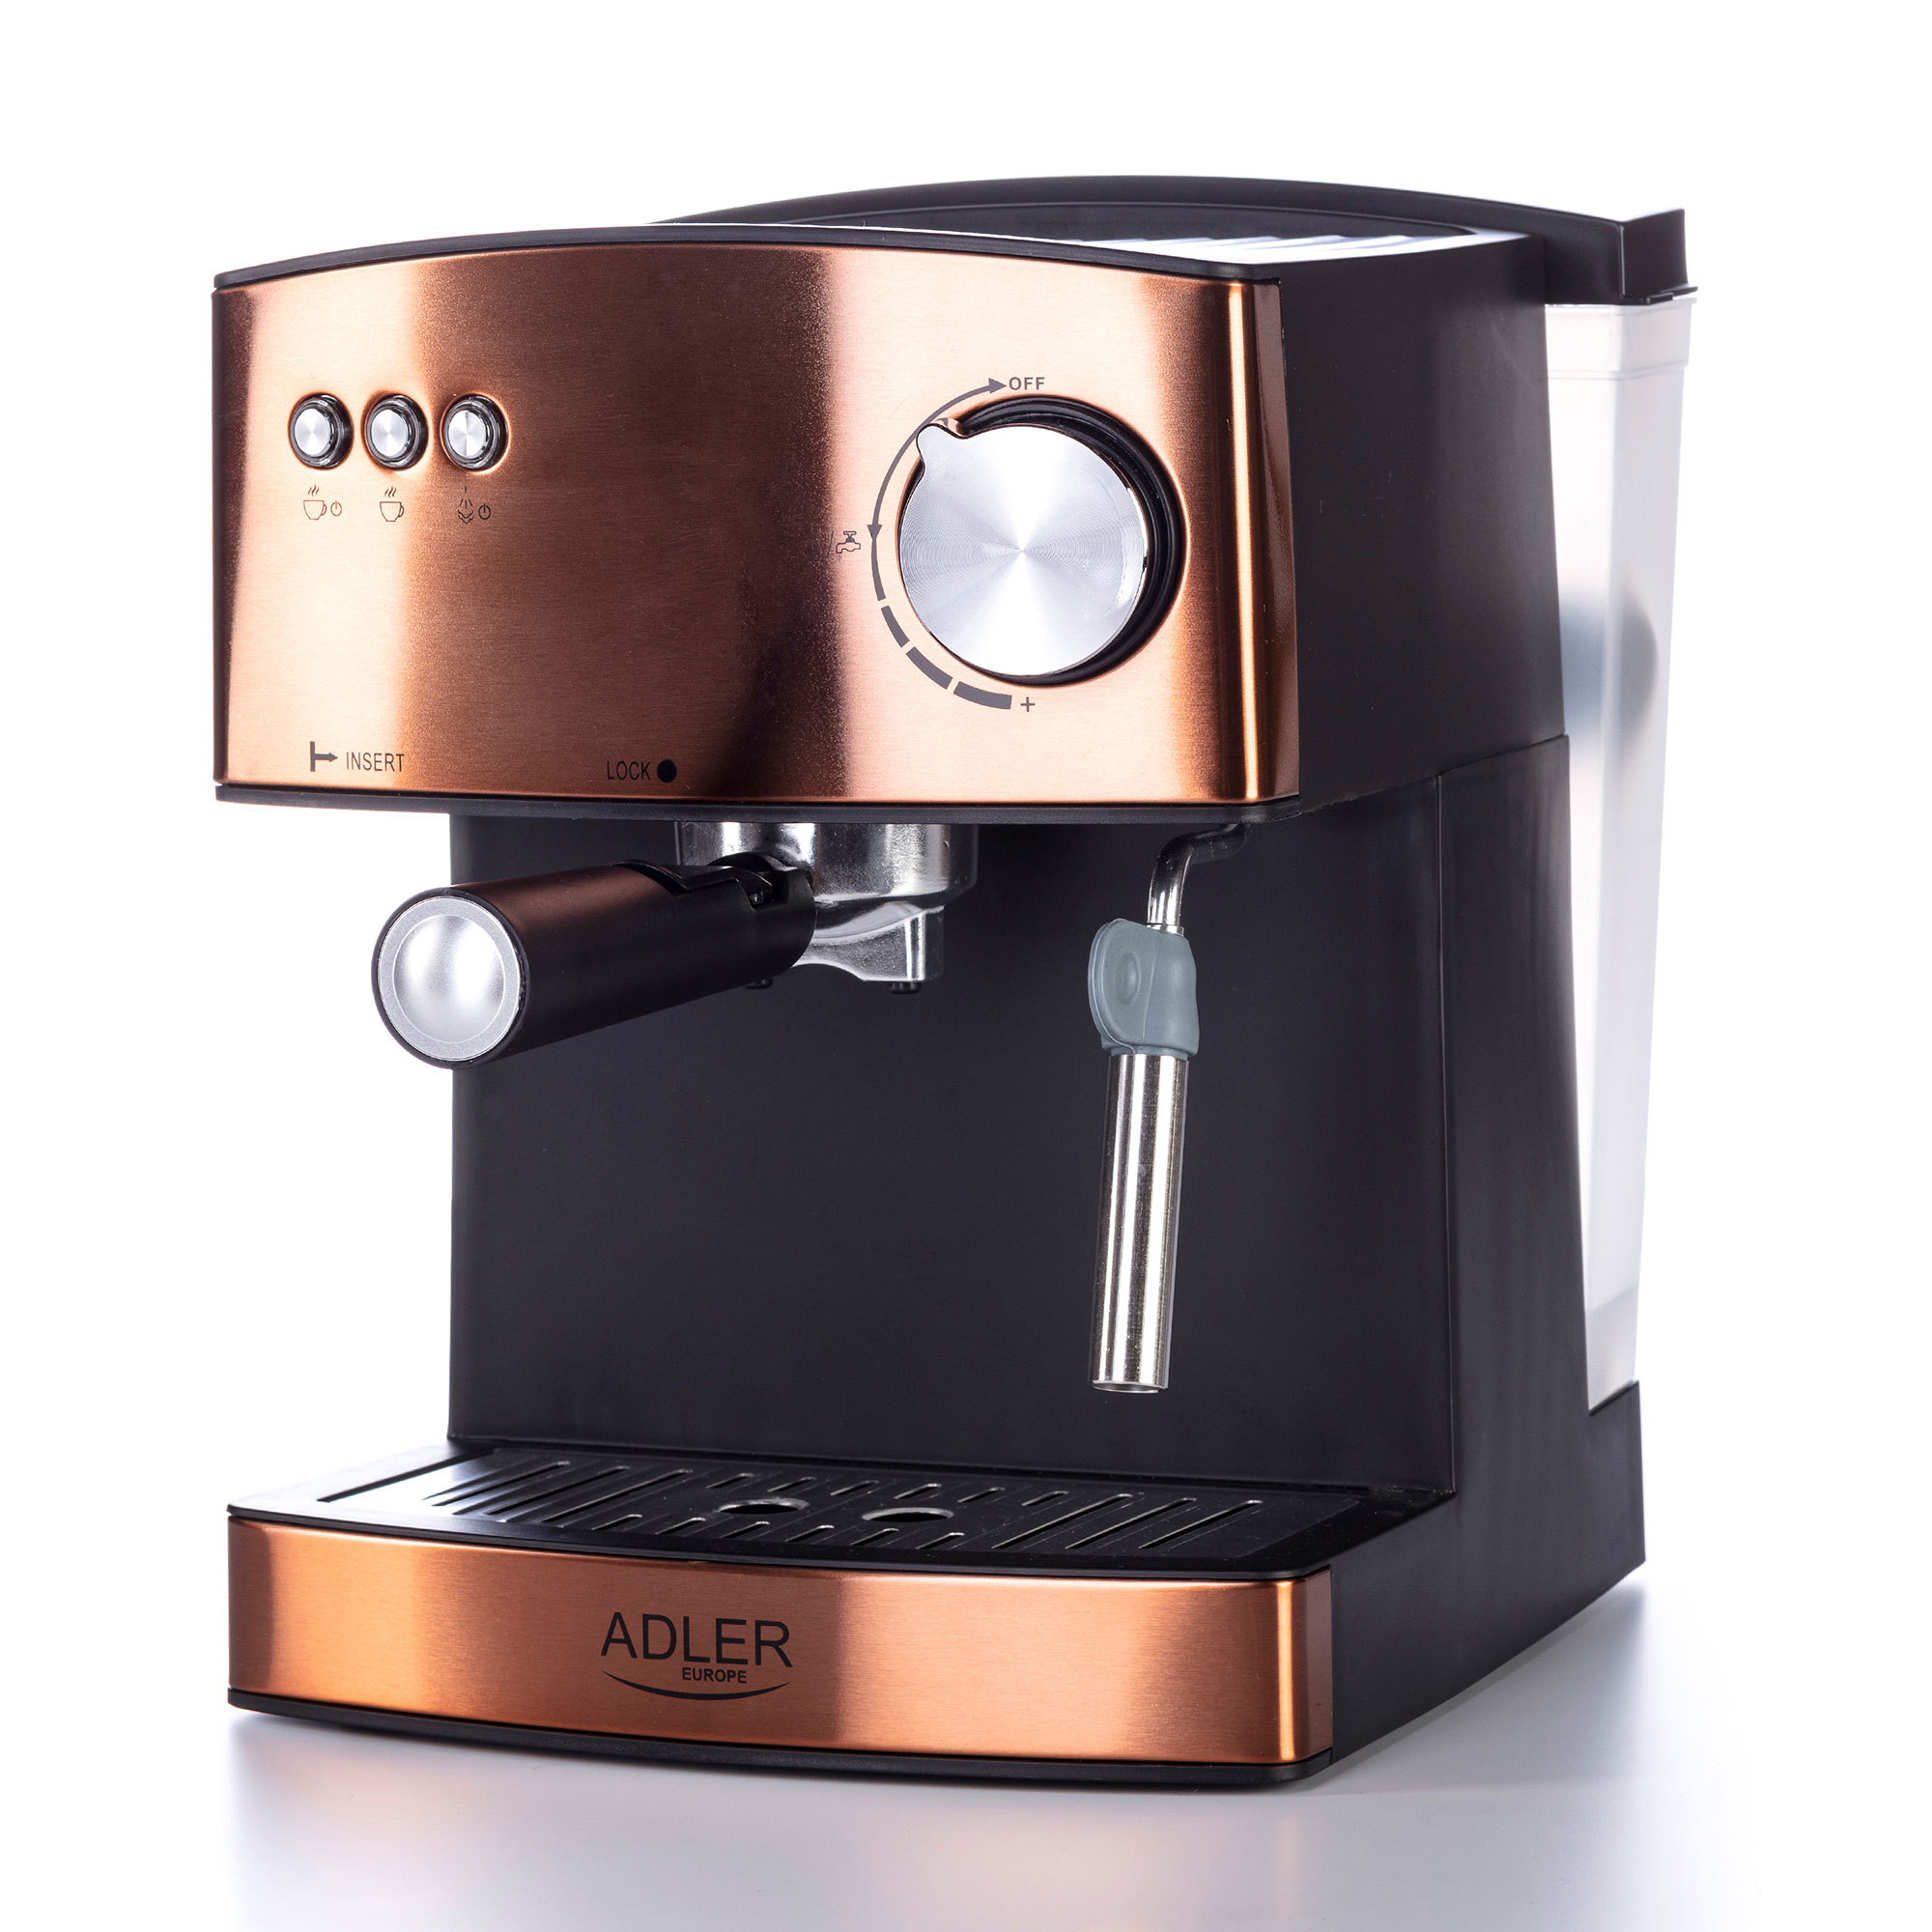 Adler Ad 4404 Cr Cafetera Espresso Automática 15 Bares, Depósito 1